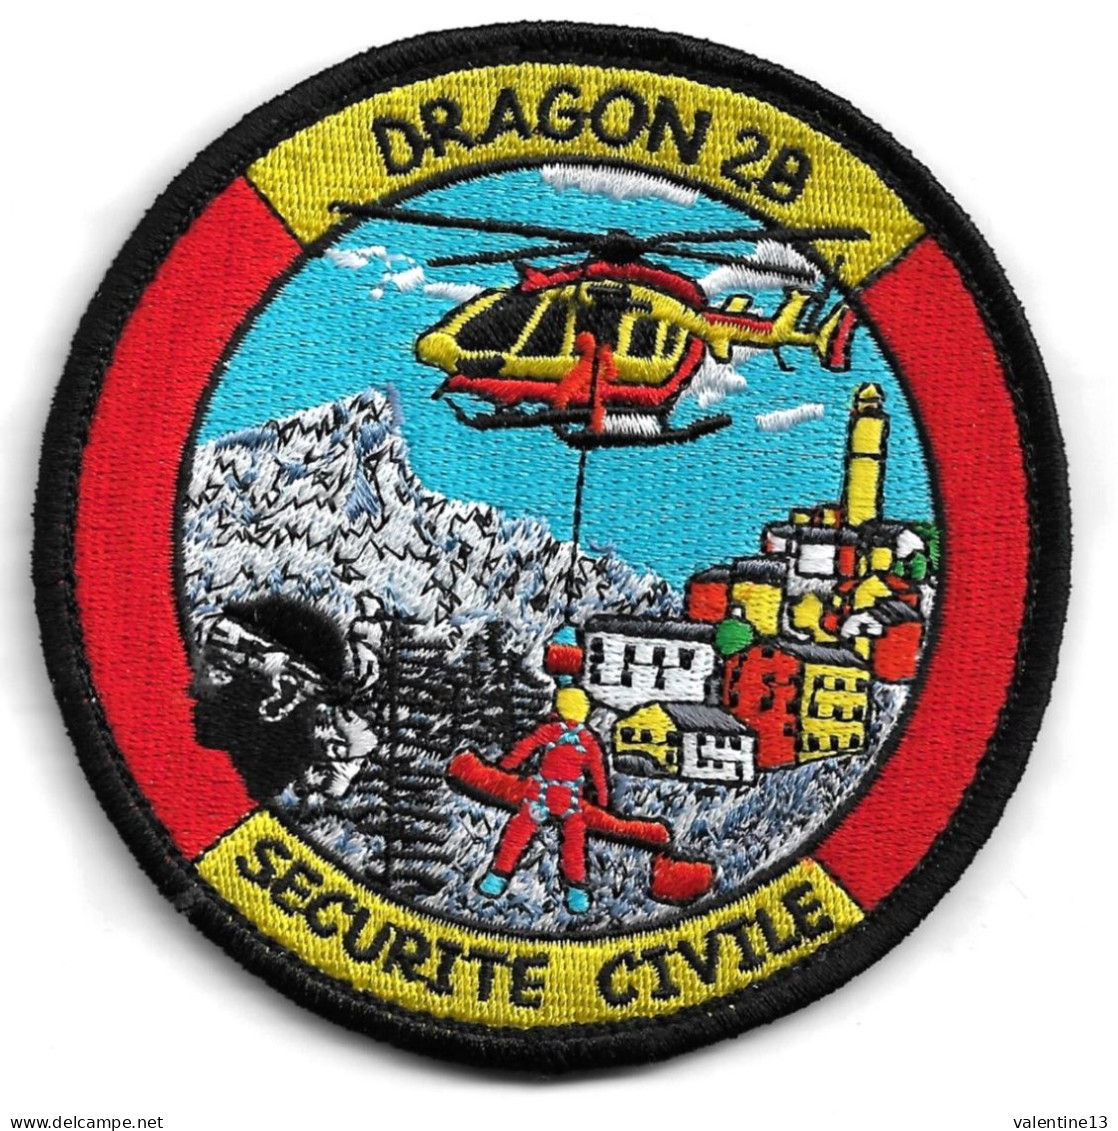 Ecusson SECURITE CIVILE DRAGON 2B EN HELITREUILLAGE - Firemen